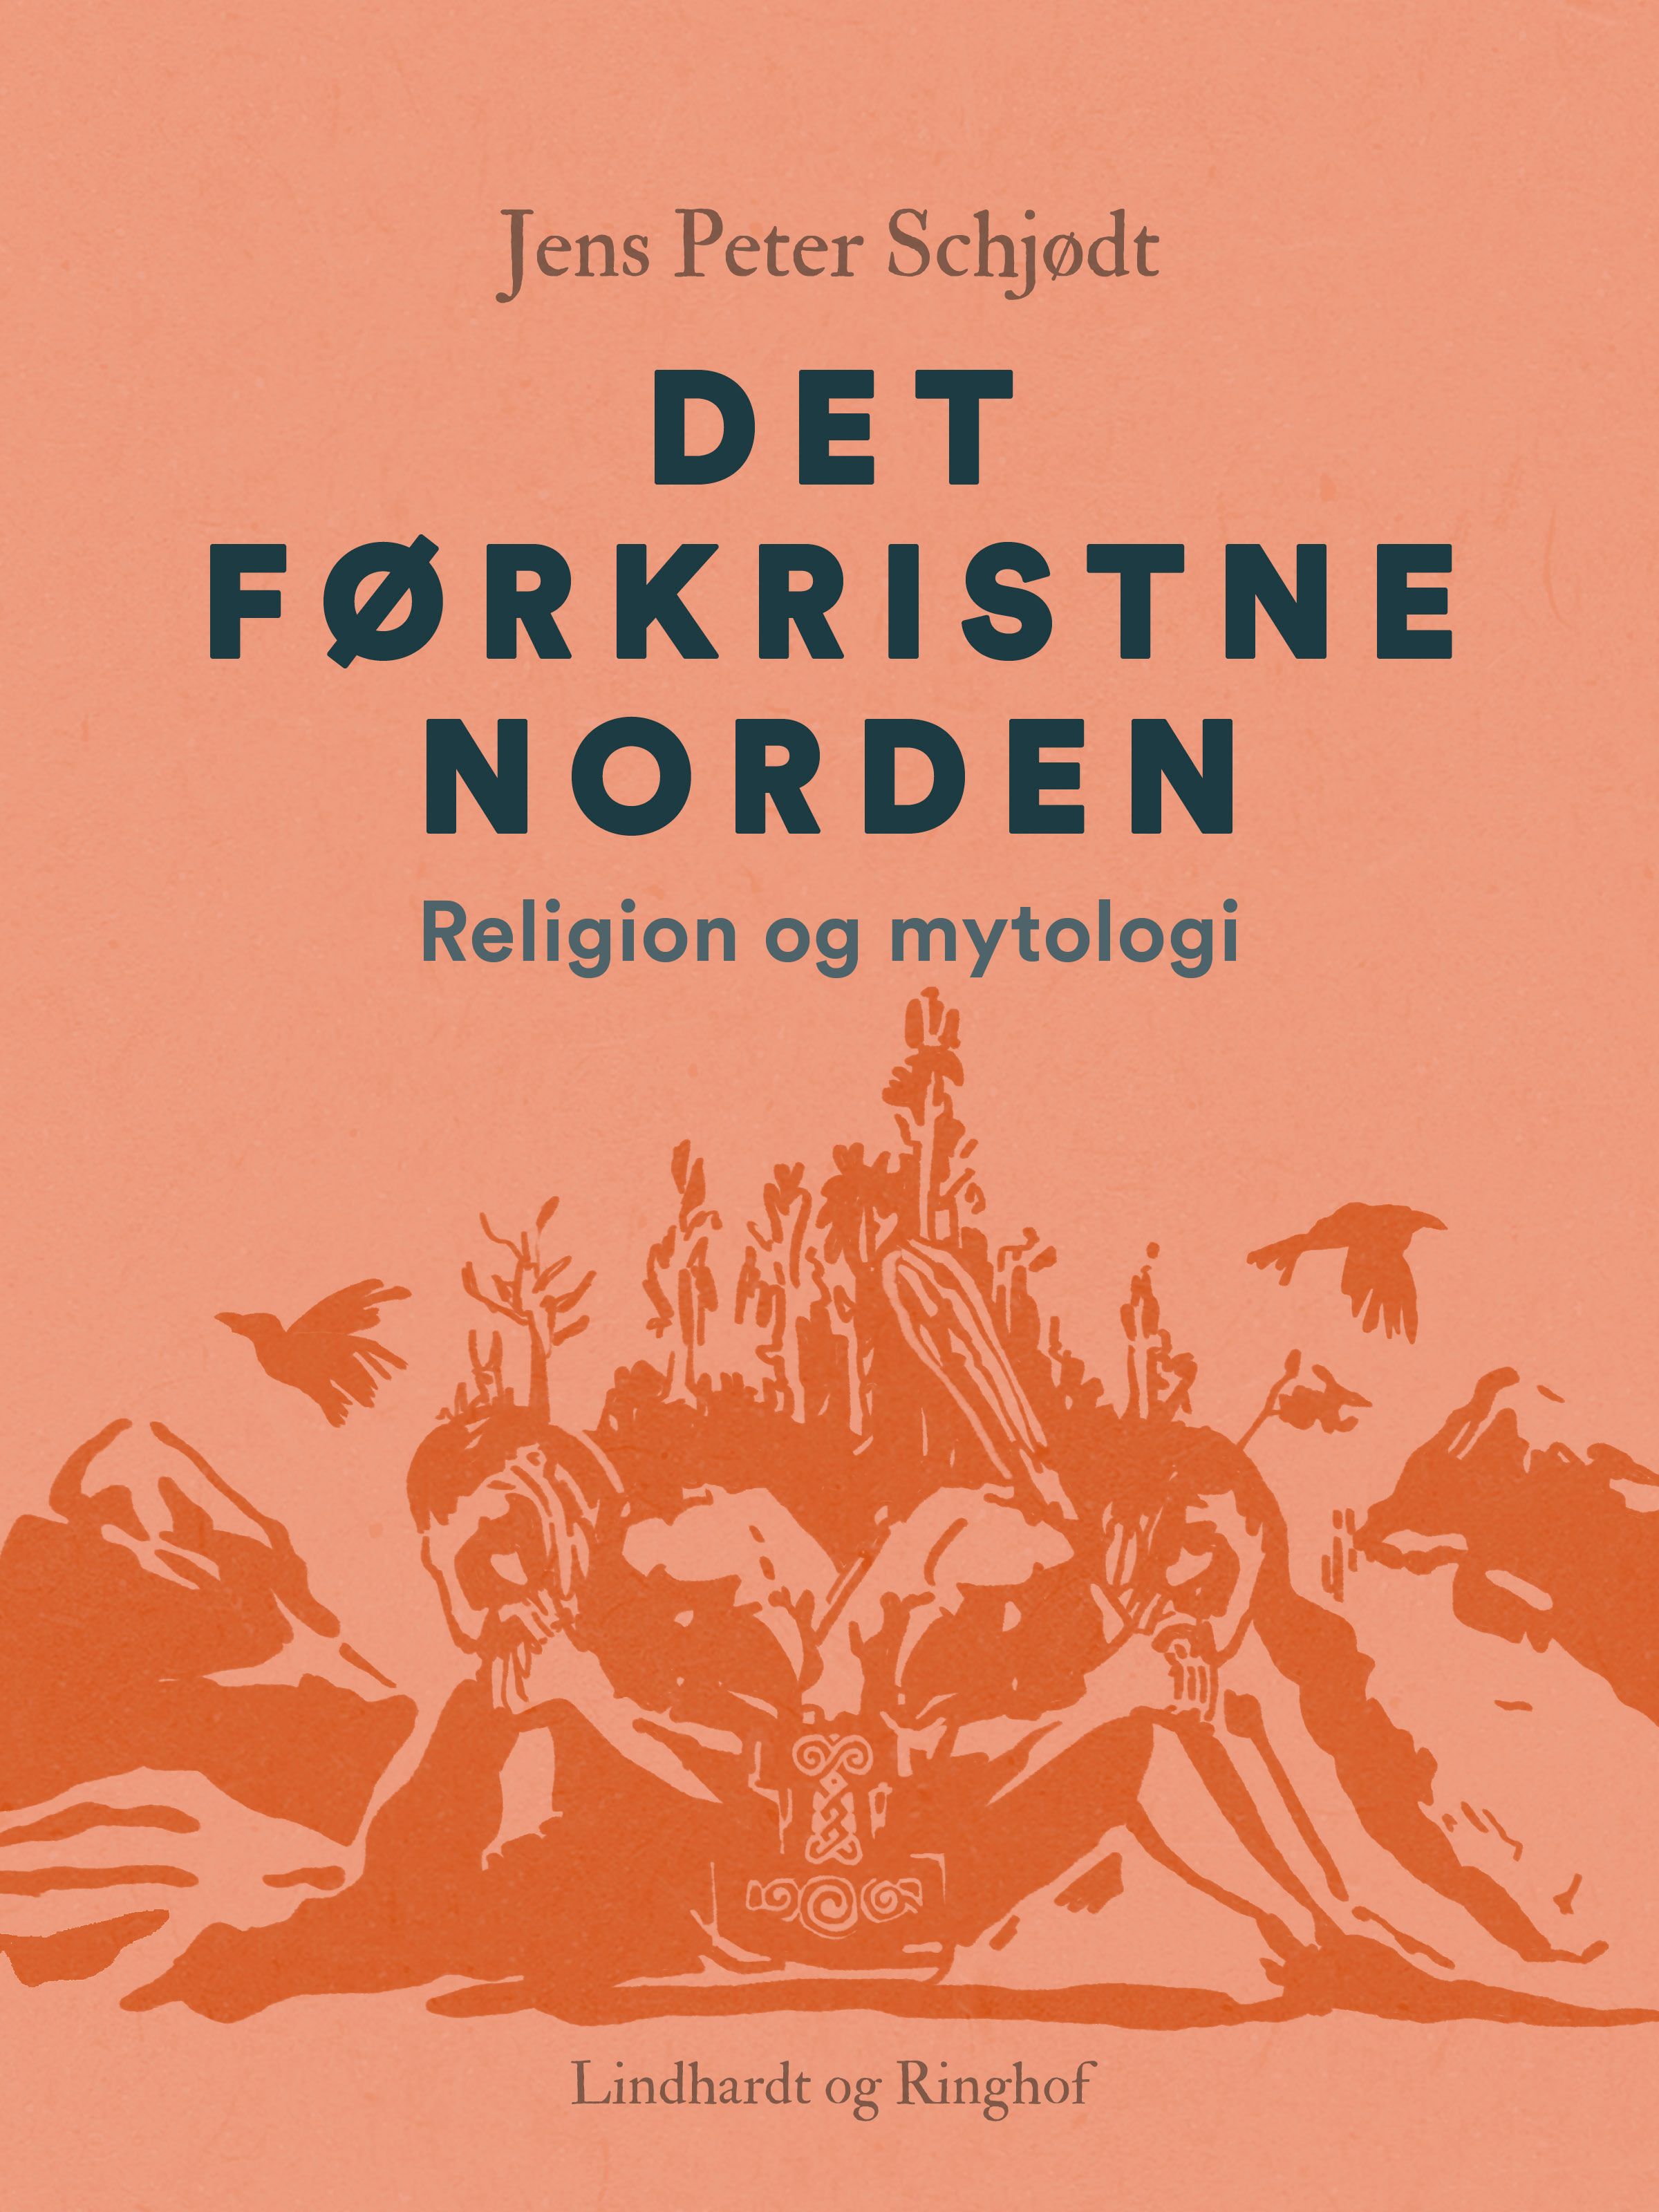 Det førkristne Norden. Religion og mytologi, e-bog af Jens Peter Schjødt